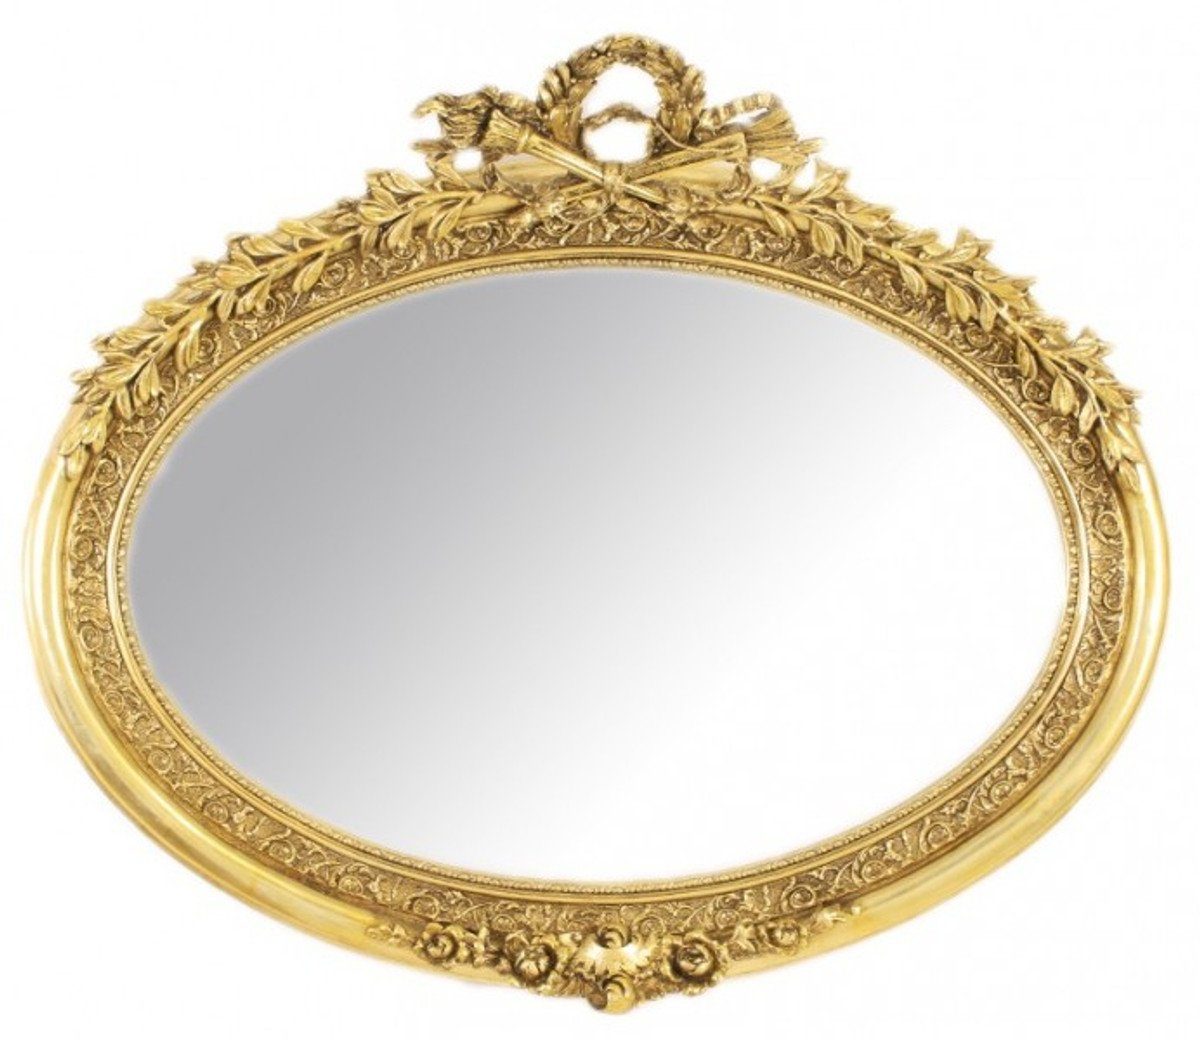 Casa Padrino Barockspiegel Luxus Barock Wandspiegel Oval Gold - Massiv und Schwer - Goldener Spiegel